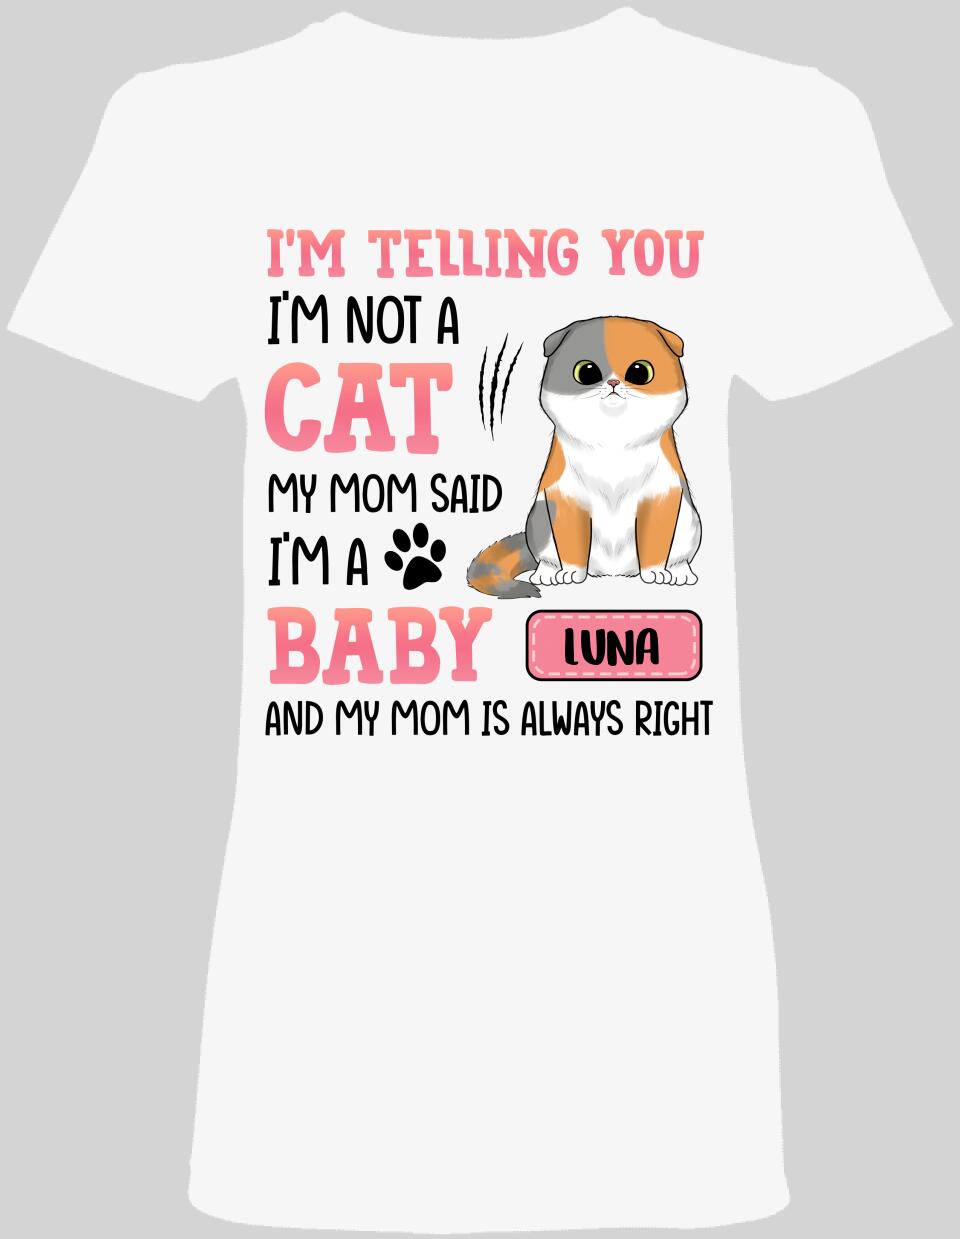 My Mom Said I'm A Baby - Ladies T-shirt